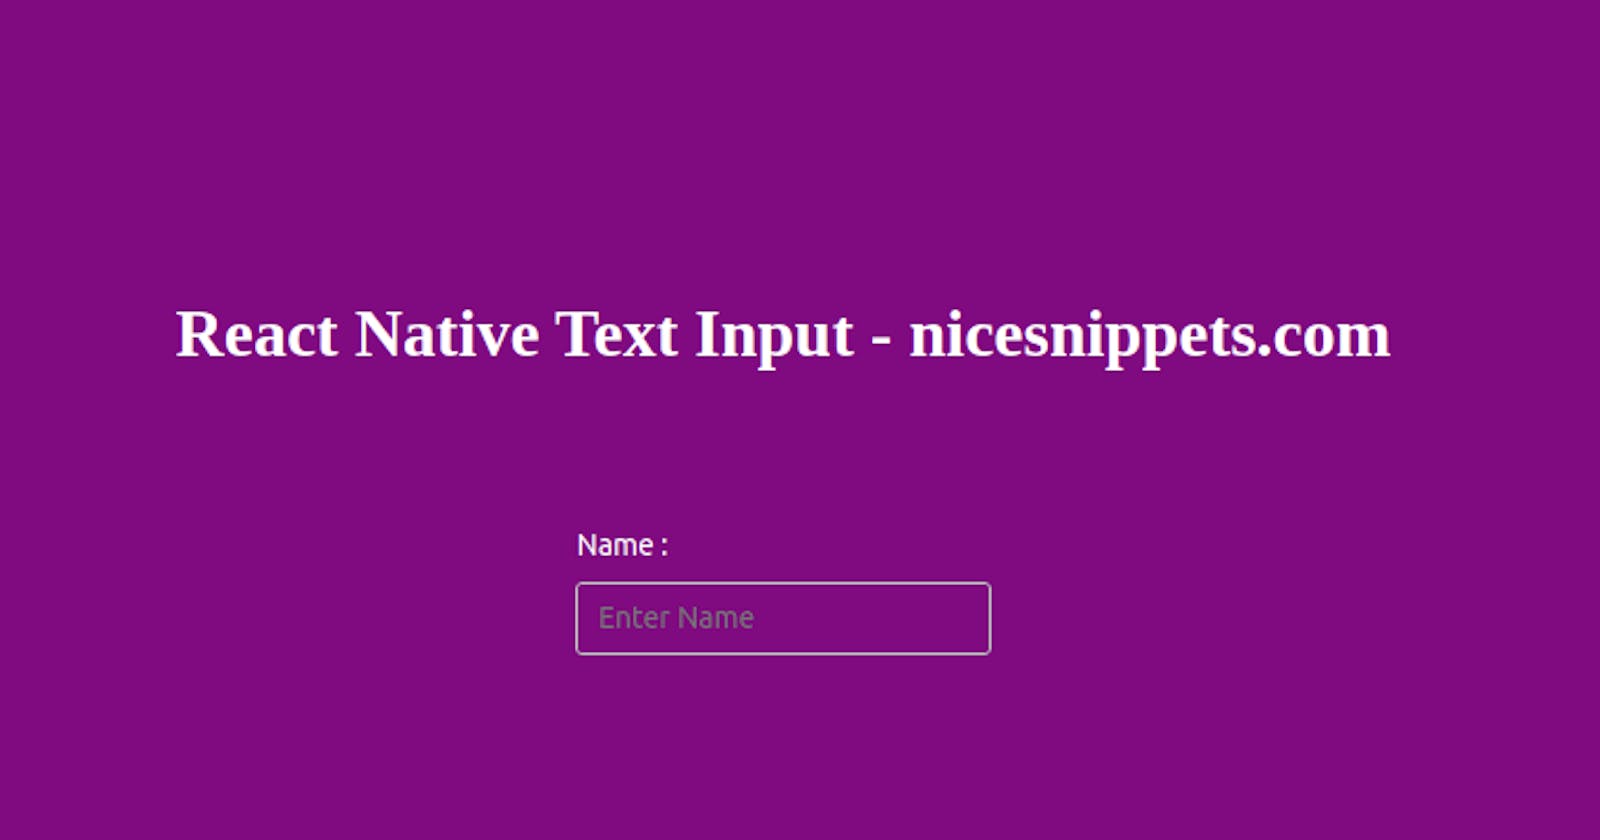 TextInput Example Using React Native